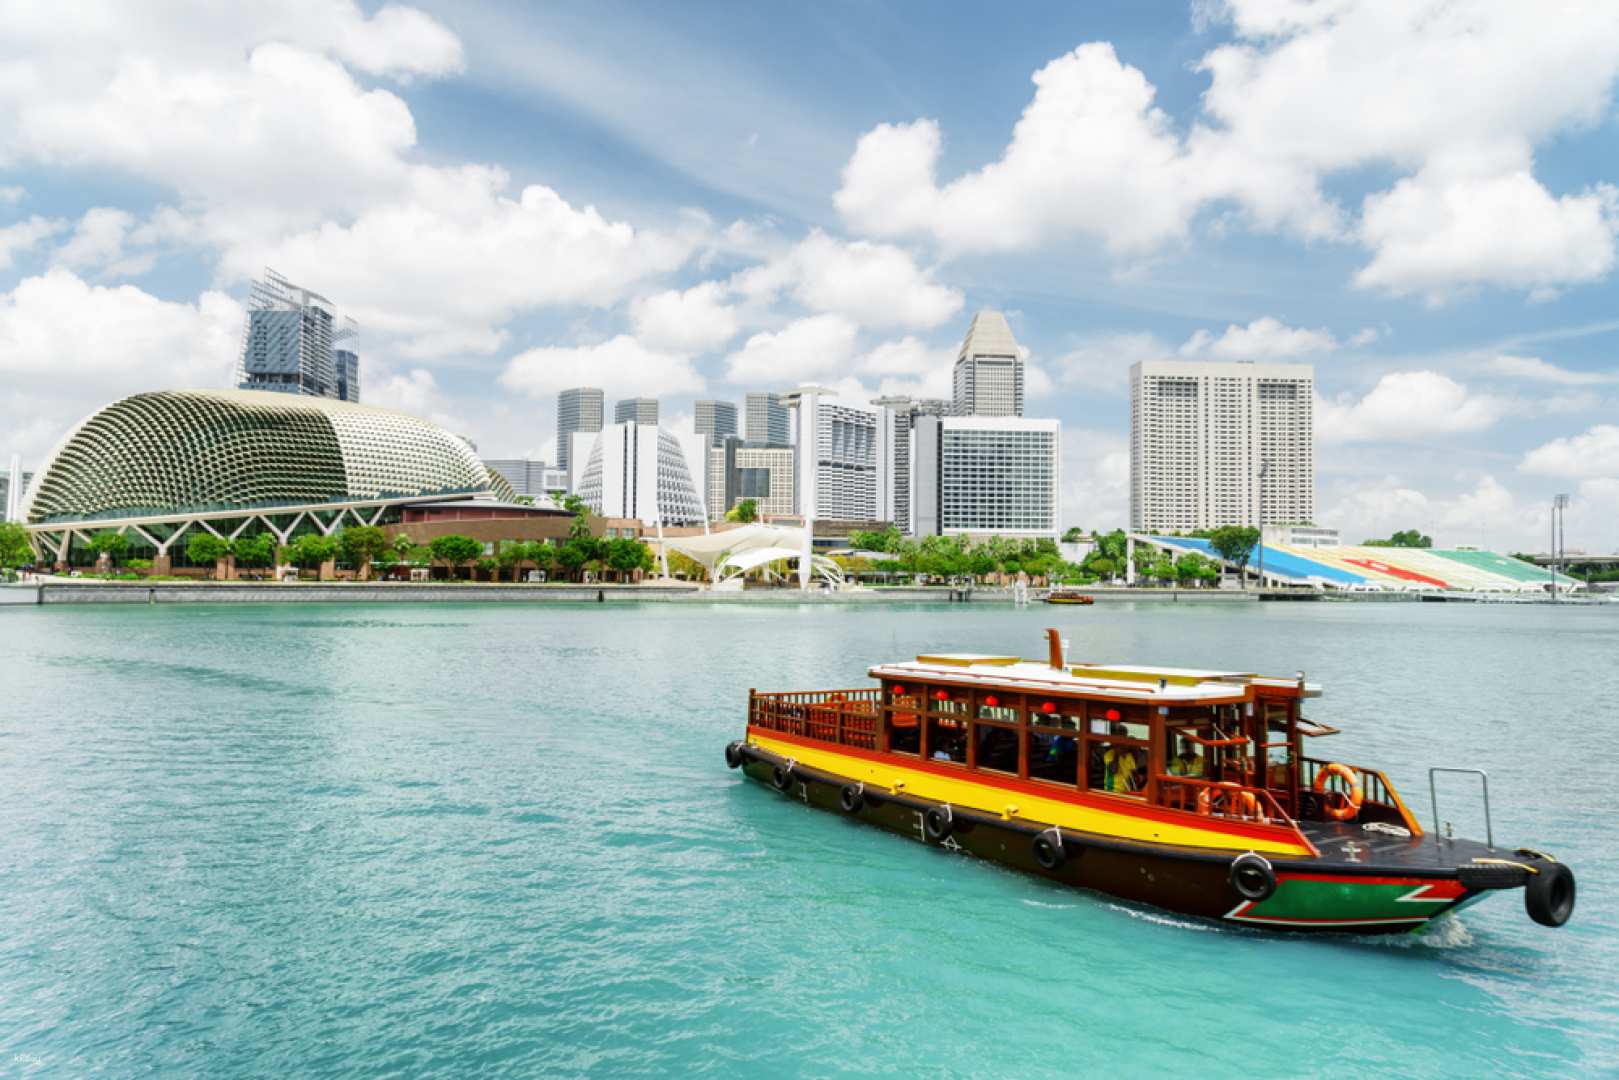 新加坡-克拉碼頭,駁船碼頭,濱海灣新加坡河遊船| 克拉碼頭出發